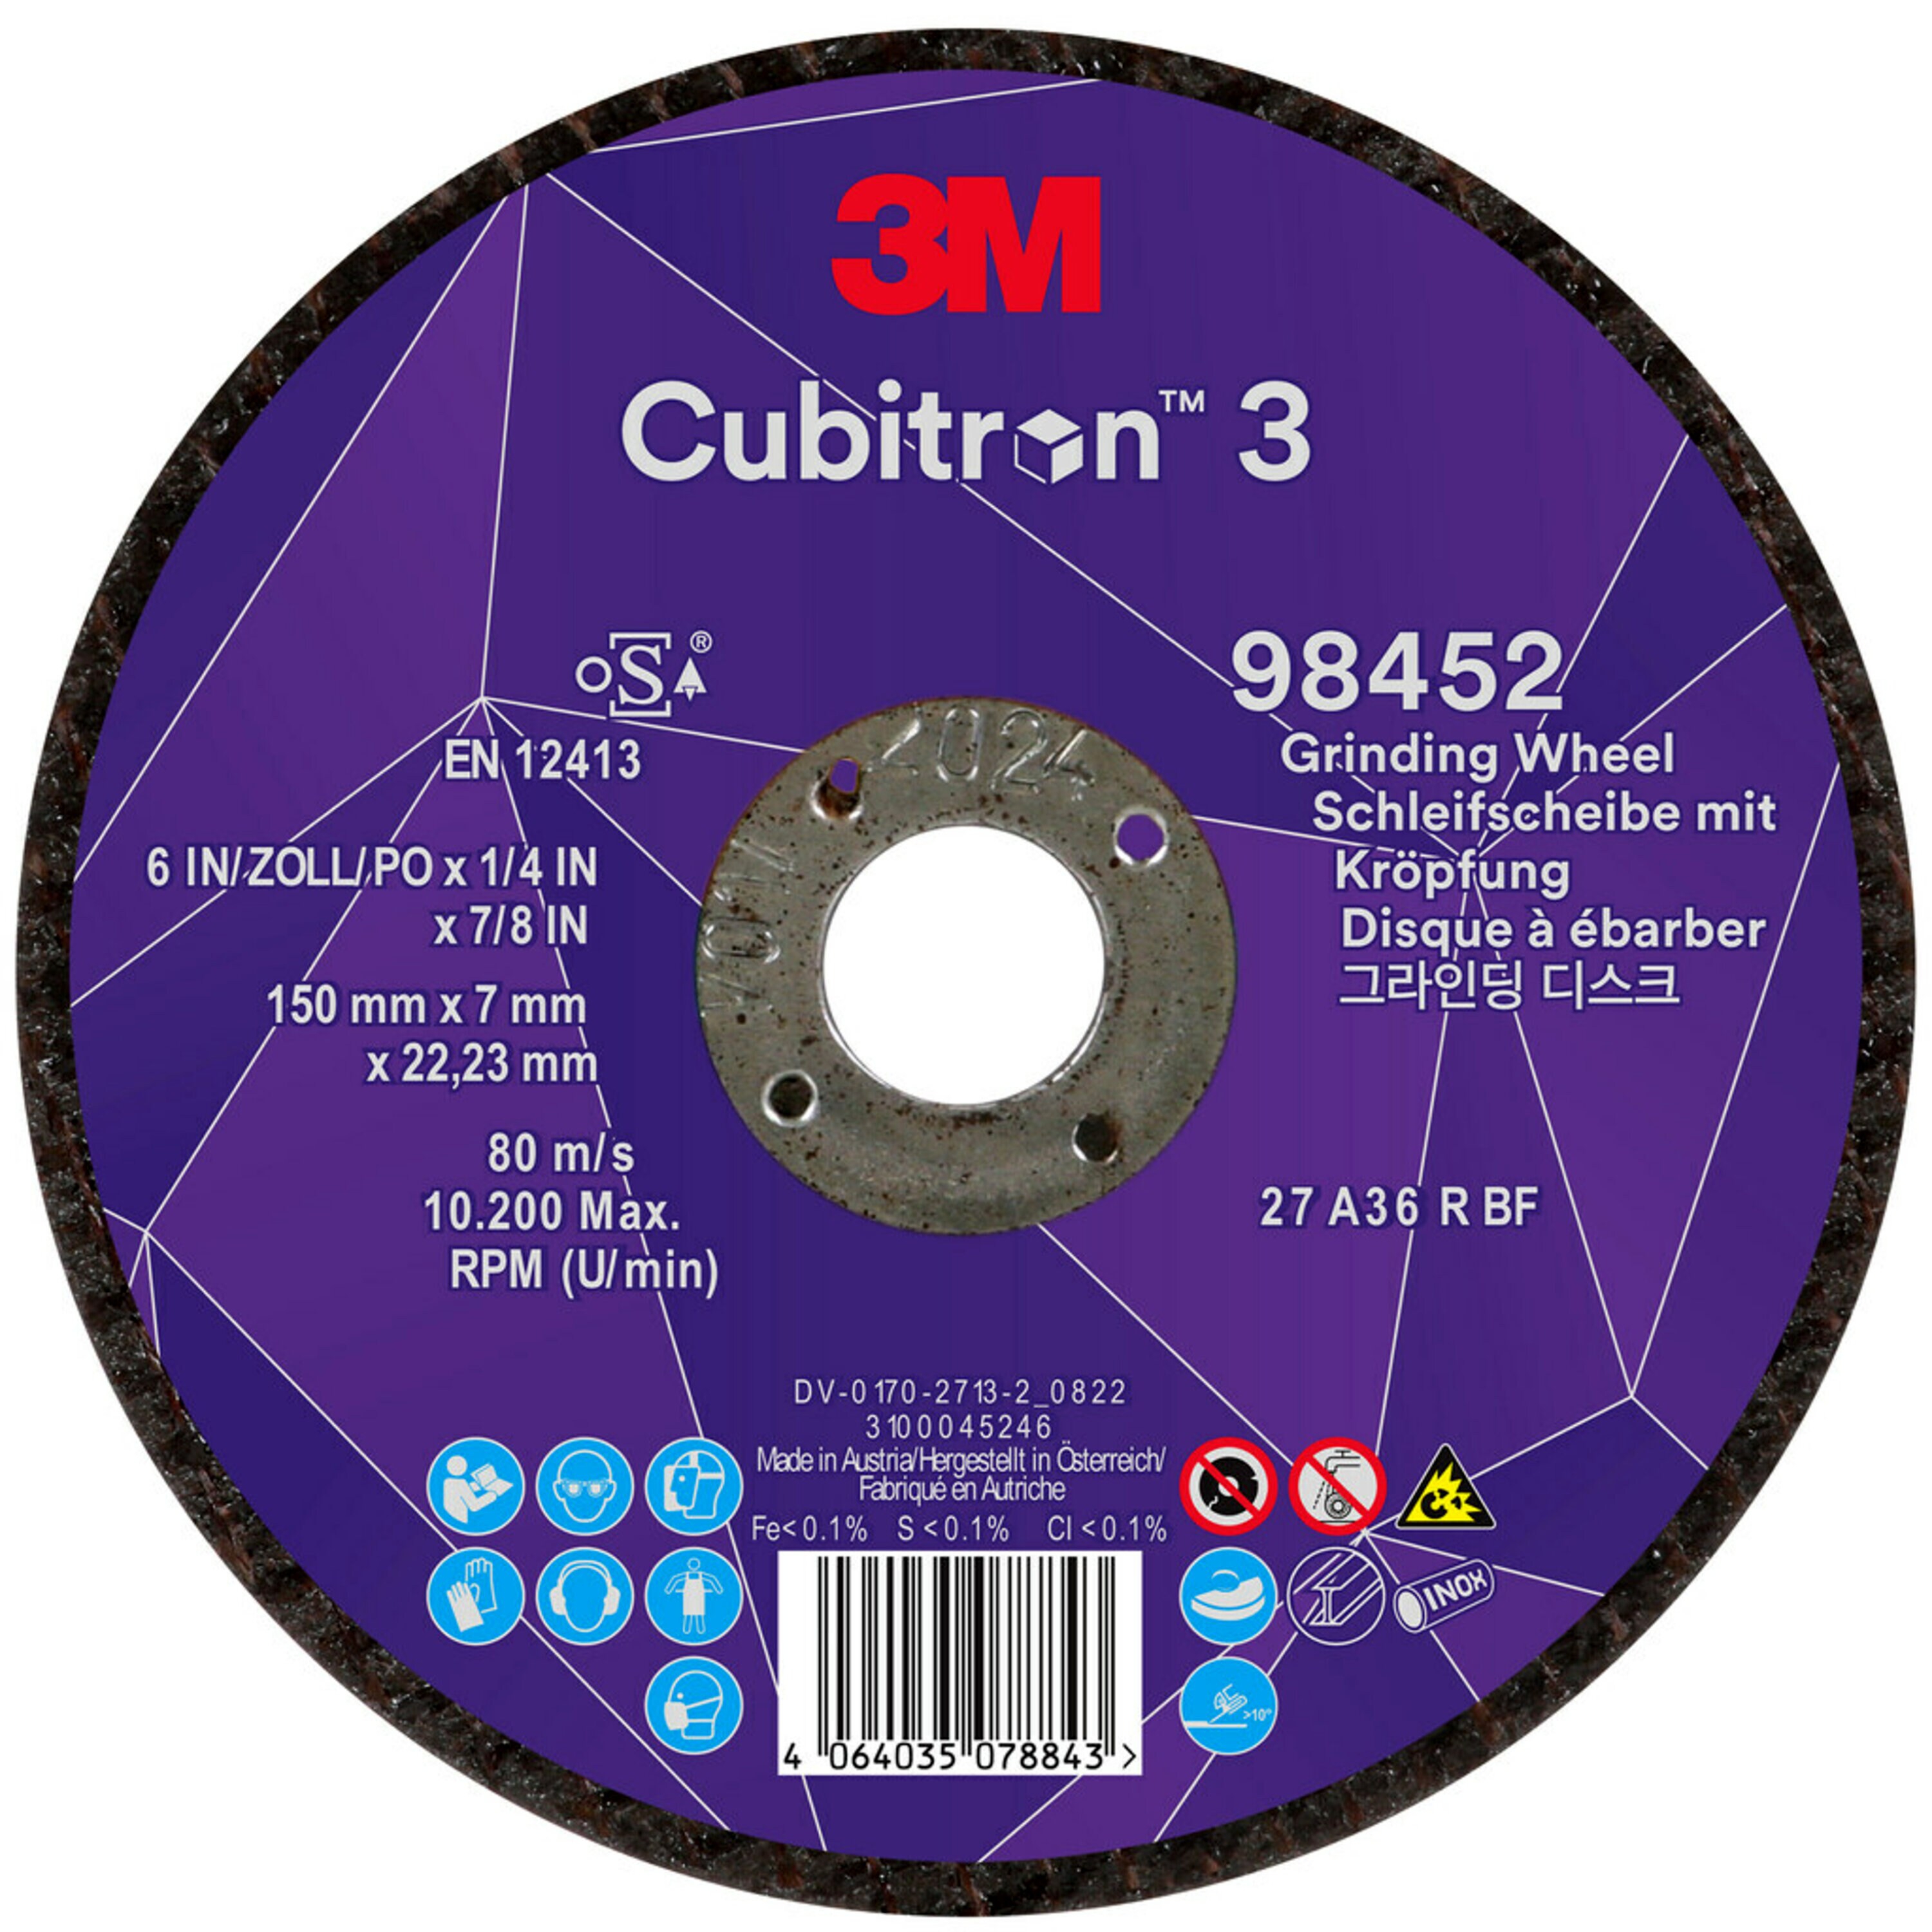 3M Cubitron 3 disque à ébarber, 150 mm, 7,0 mm, 22,23 mm, 36 , type 27 # 98452